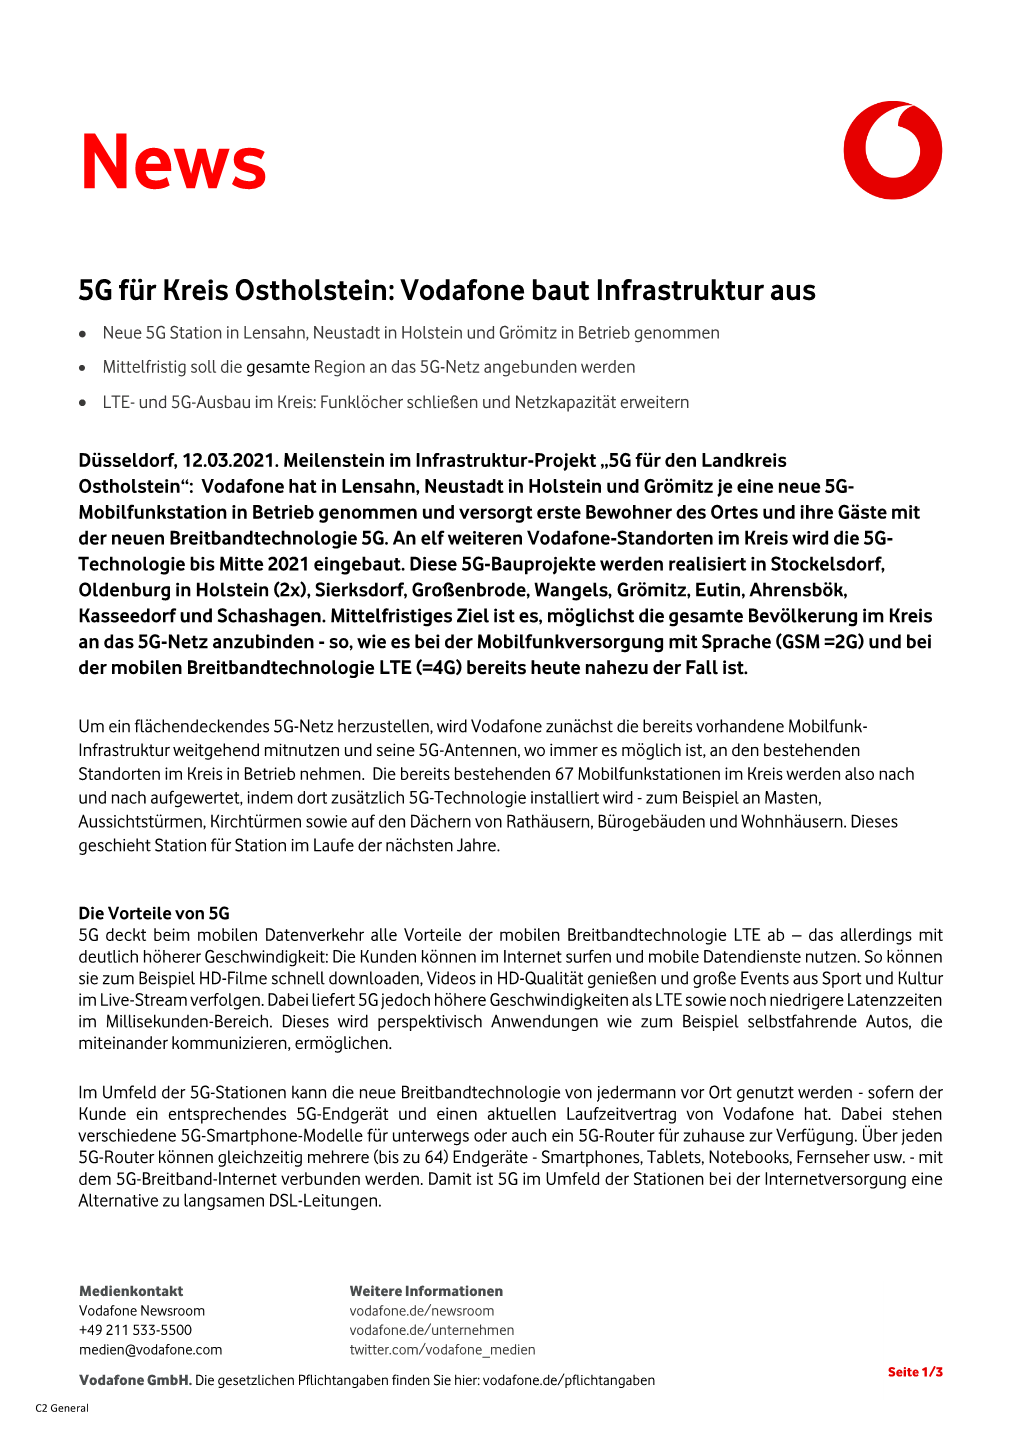 5G Für Kreis Ostholstein: Vodafone Baut Infrastruktur